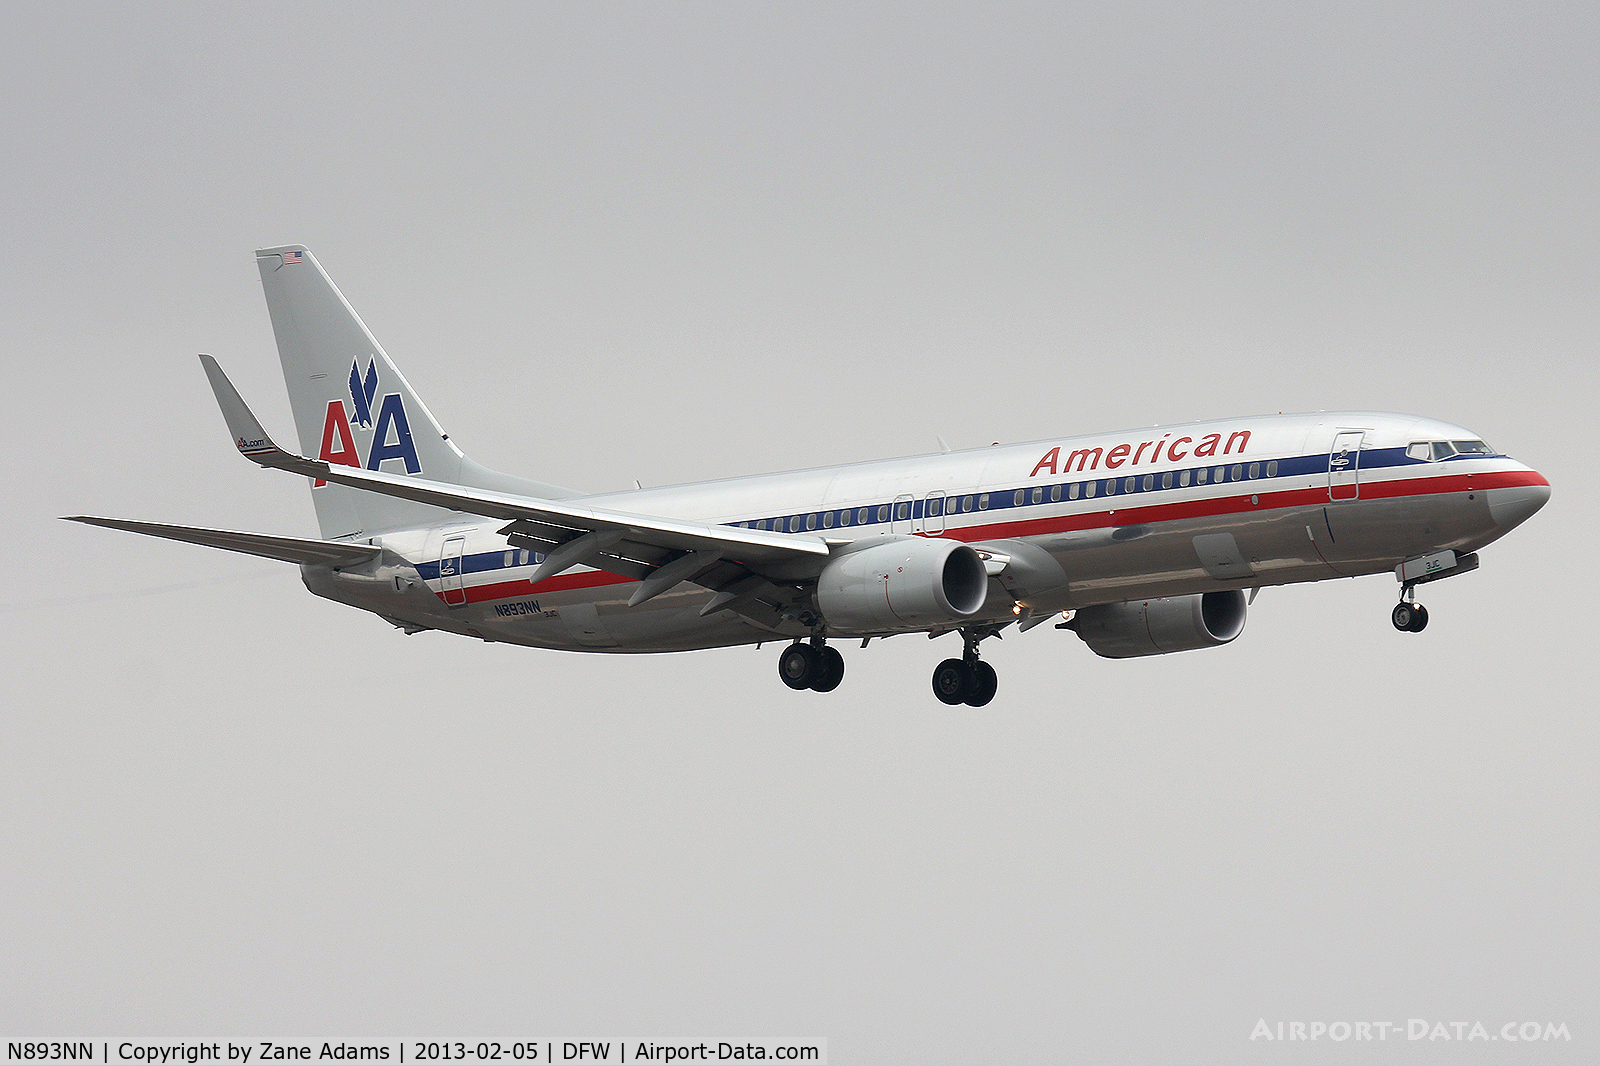 N893NN, 2012 Boeing 737-823 C/N 33316, American Airlines at DFW Airport